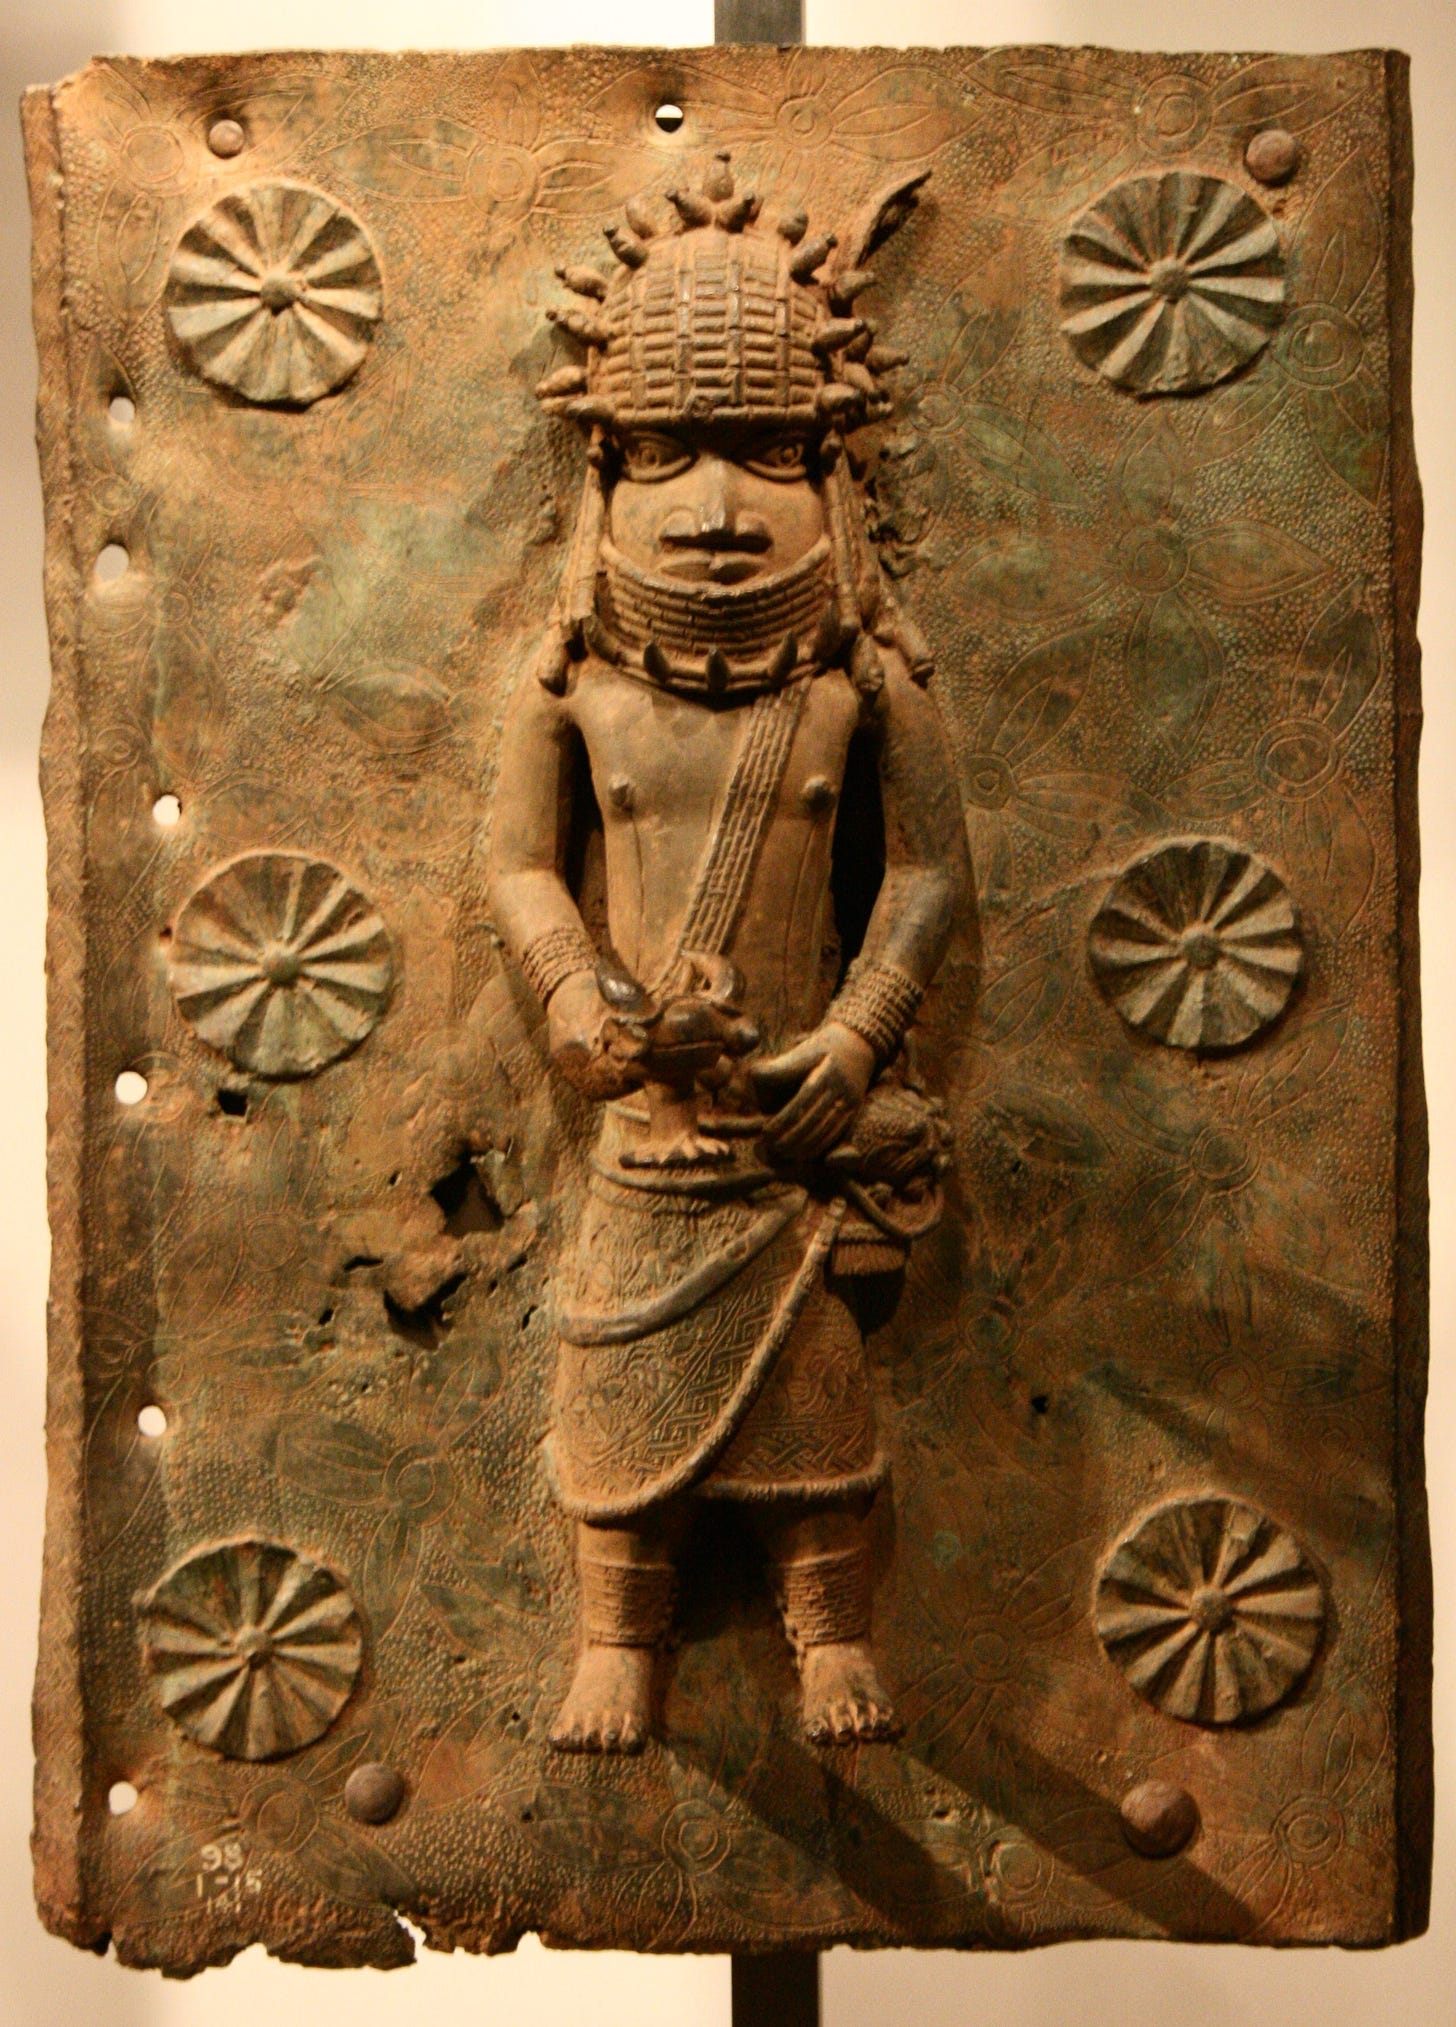 Benin Bronzes - Wikipedia